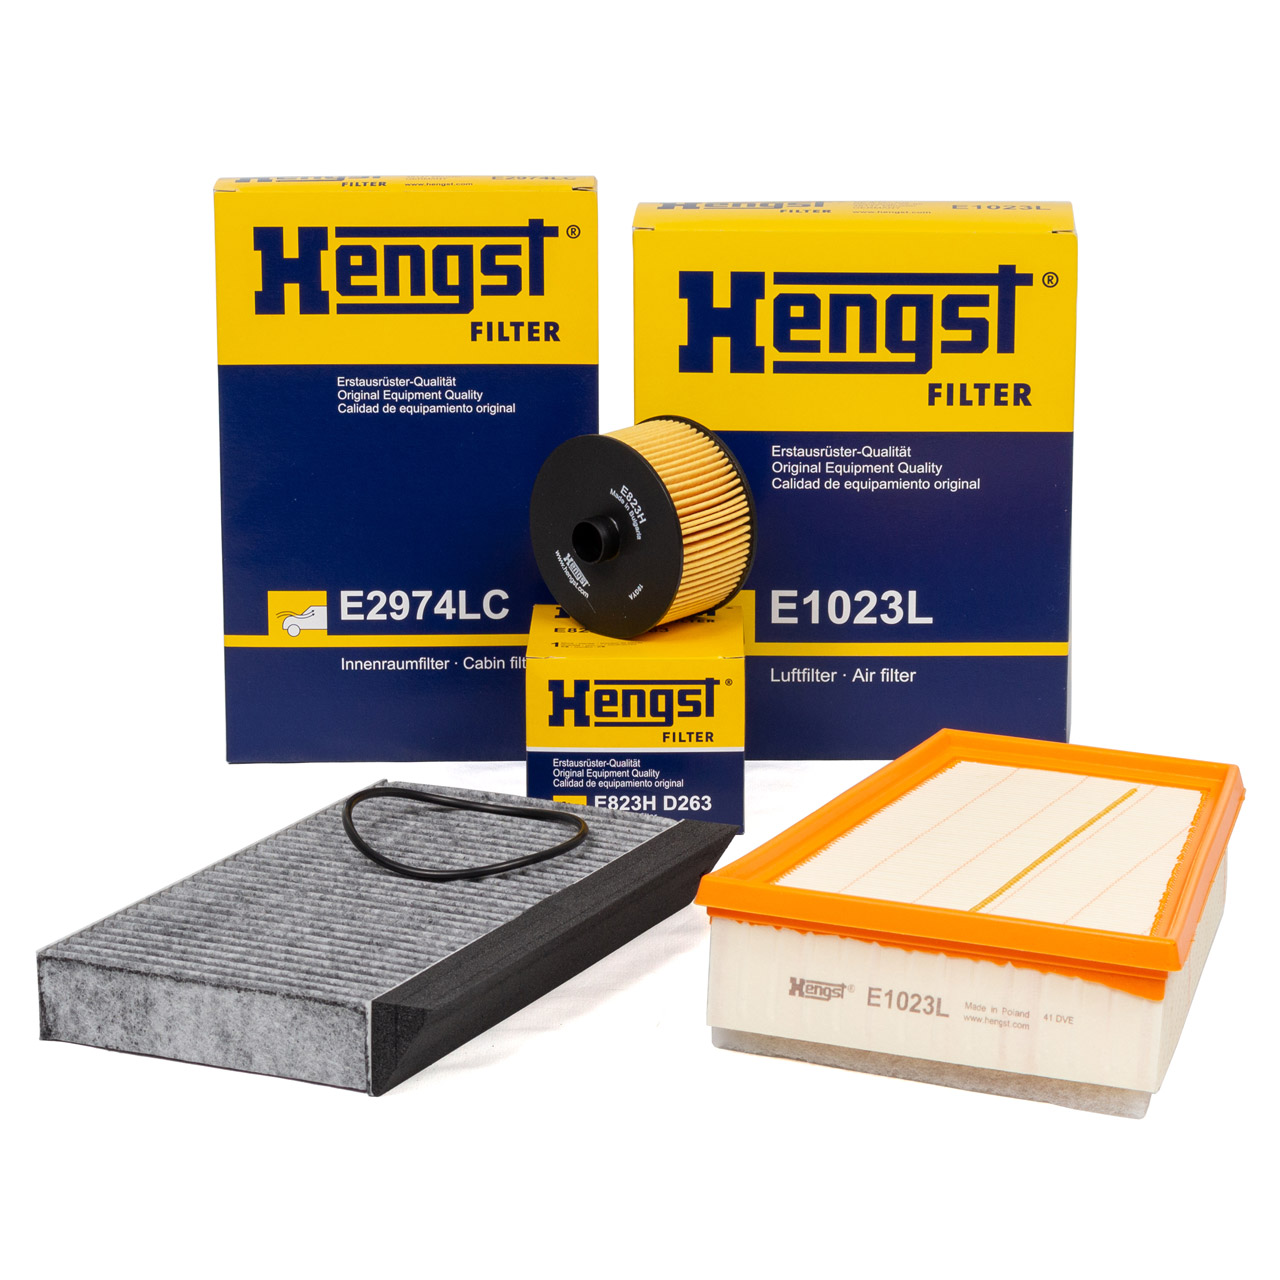 HENGST Filterset RENAULT Megane 3 / Megane CC 1.2 TCe 116/132 PS